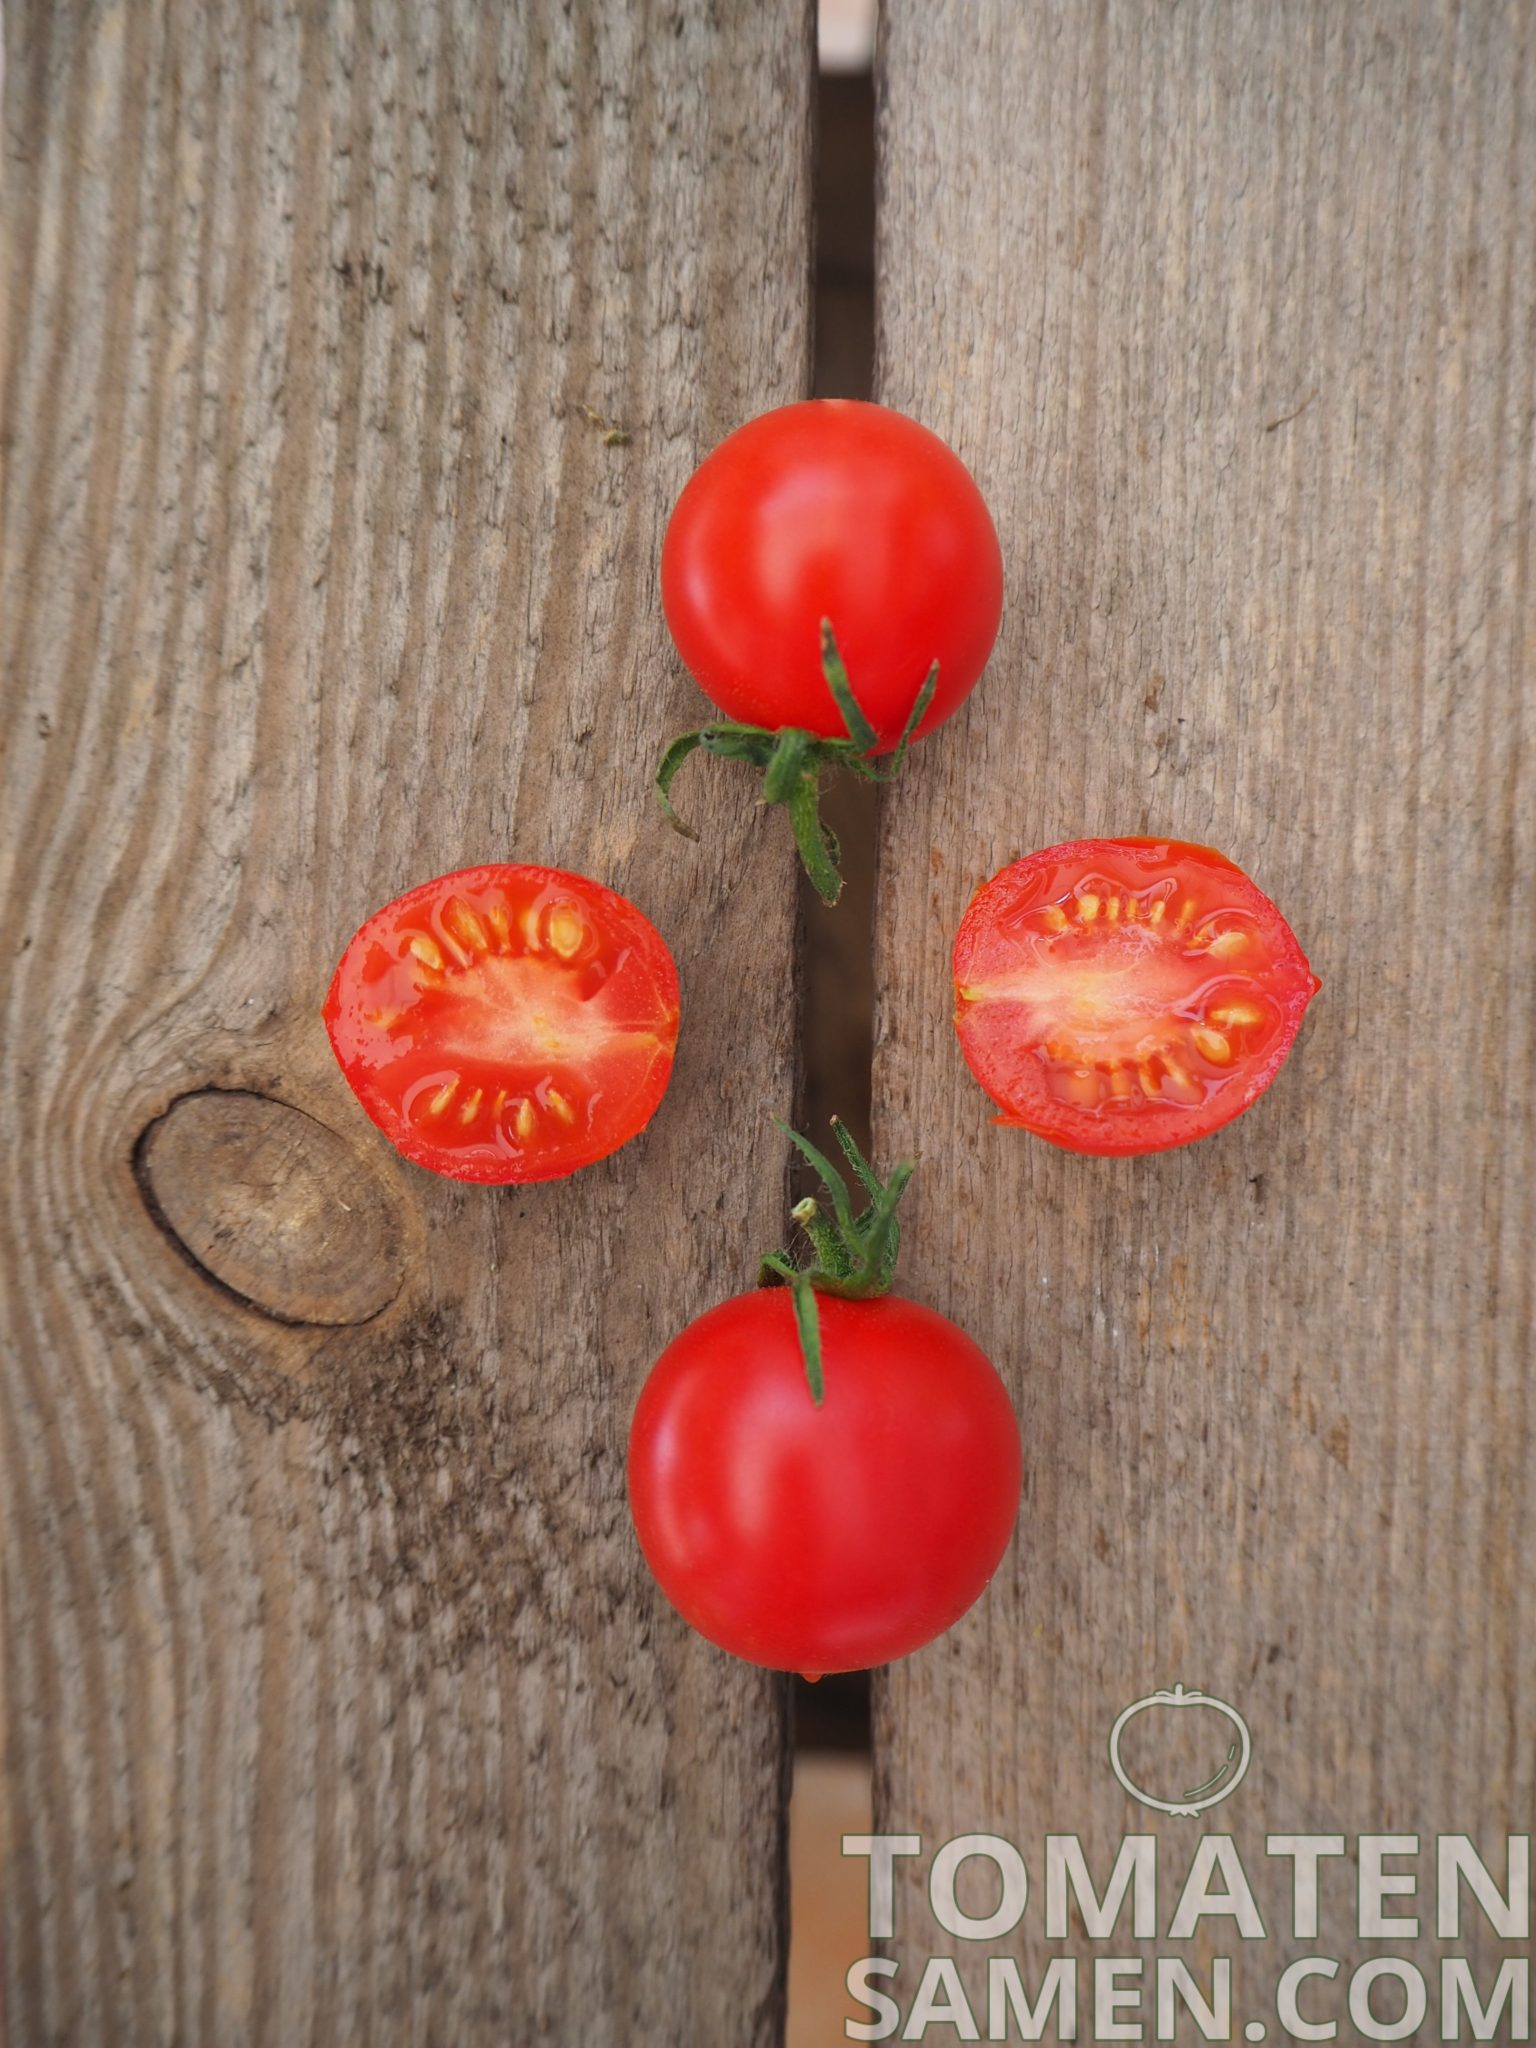 ertragreich 10 Samen Tomaten Riesentraube 